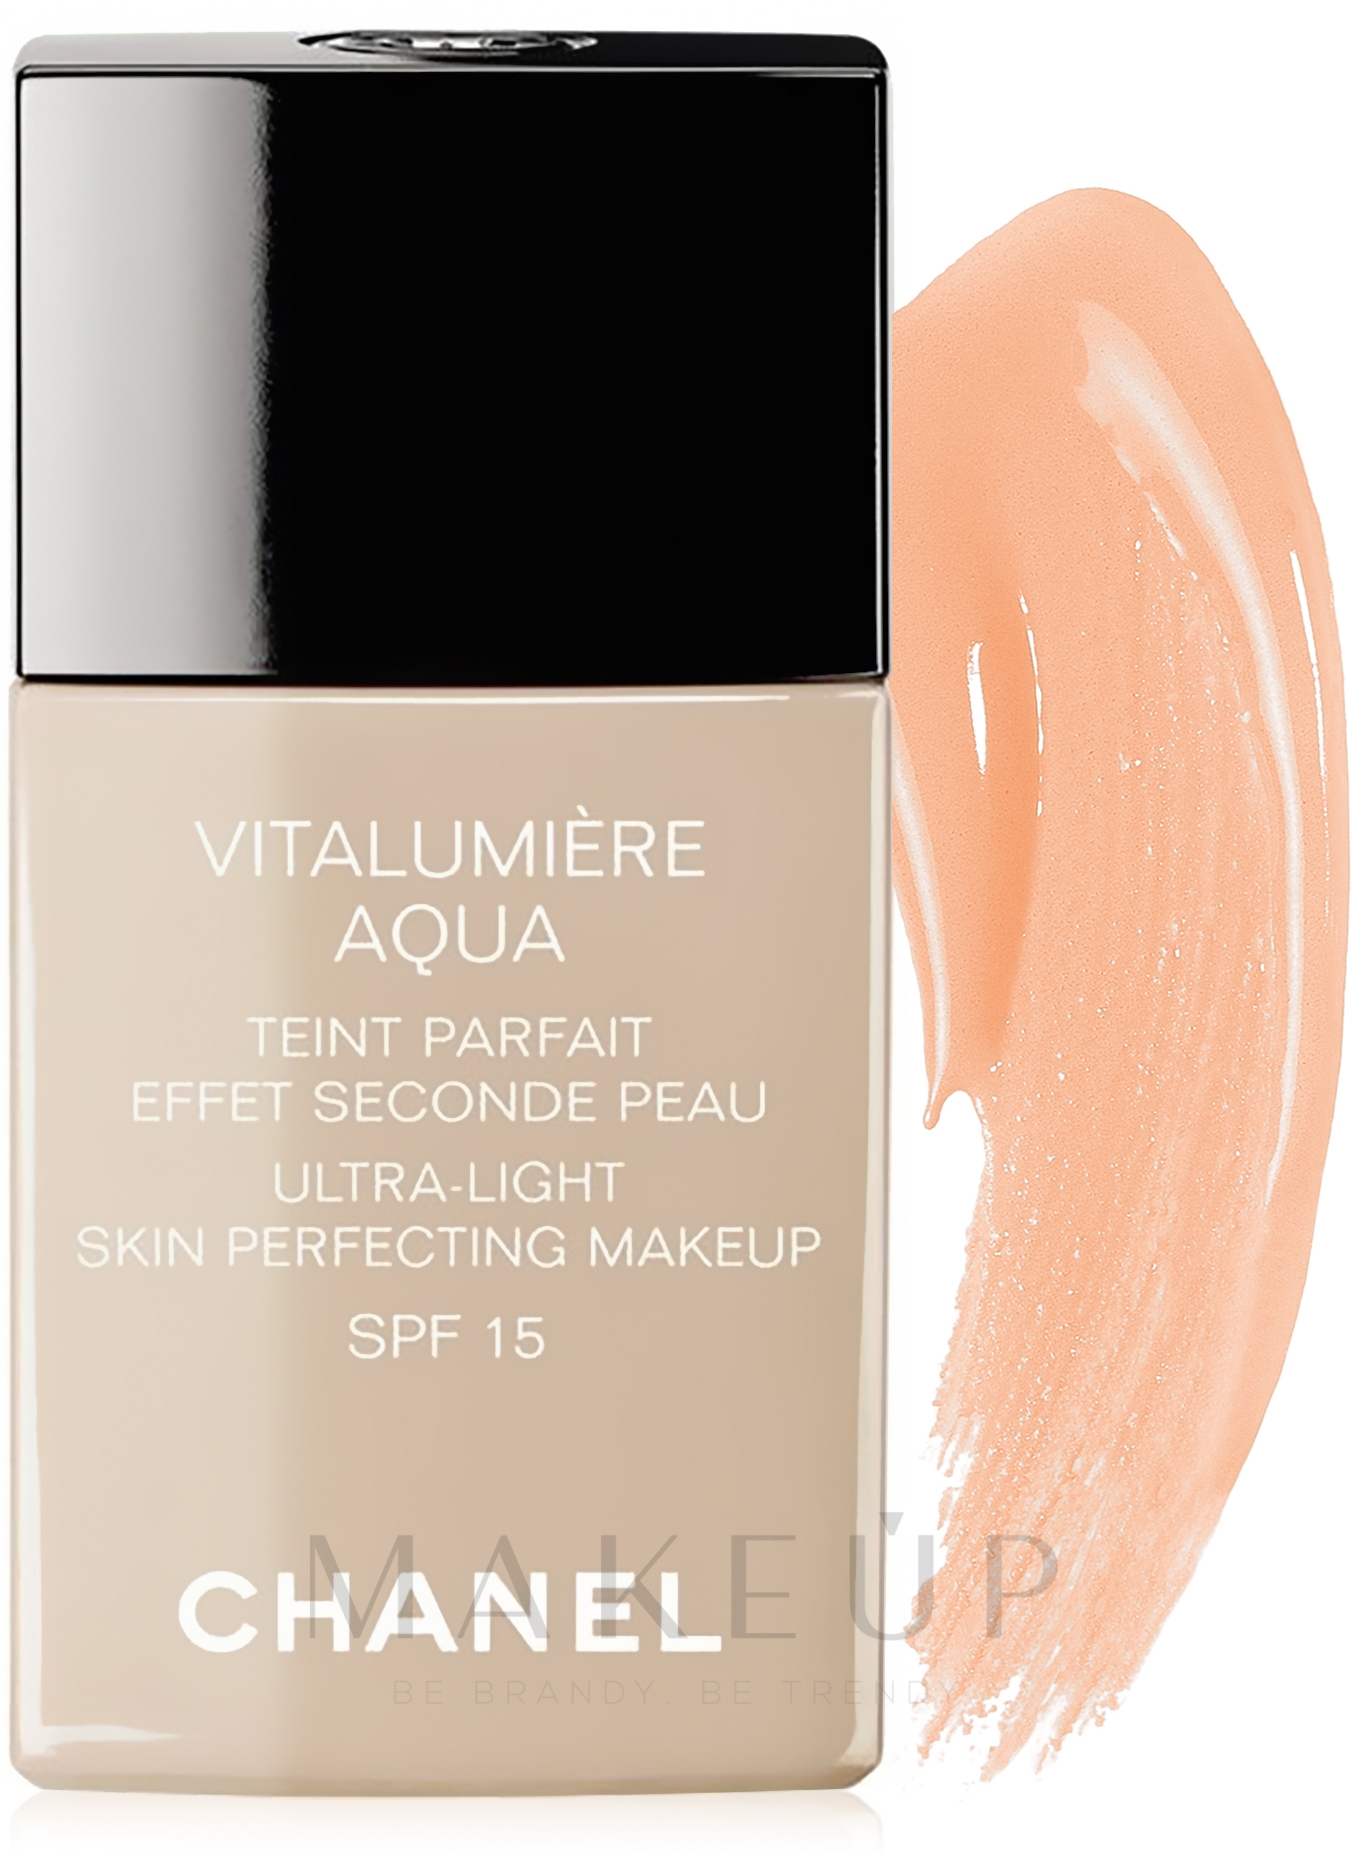 Foundation für eine strahlende Haut LSF 15 - Chanel Vitalumiere Aqua — Foto 42 - Beige Rose